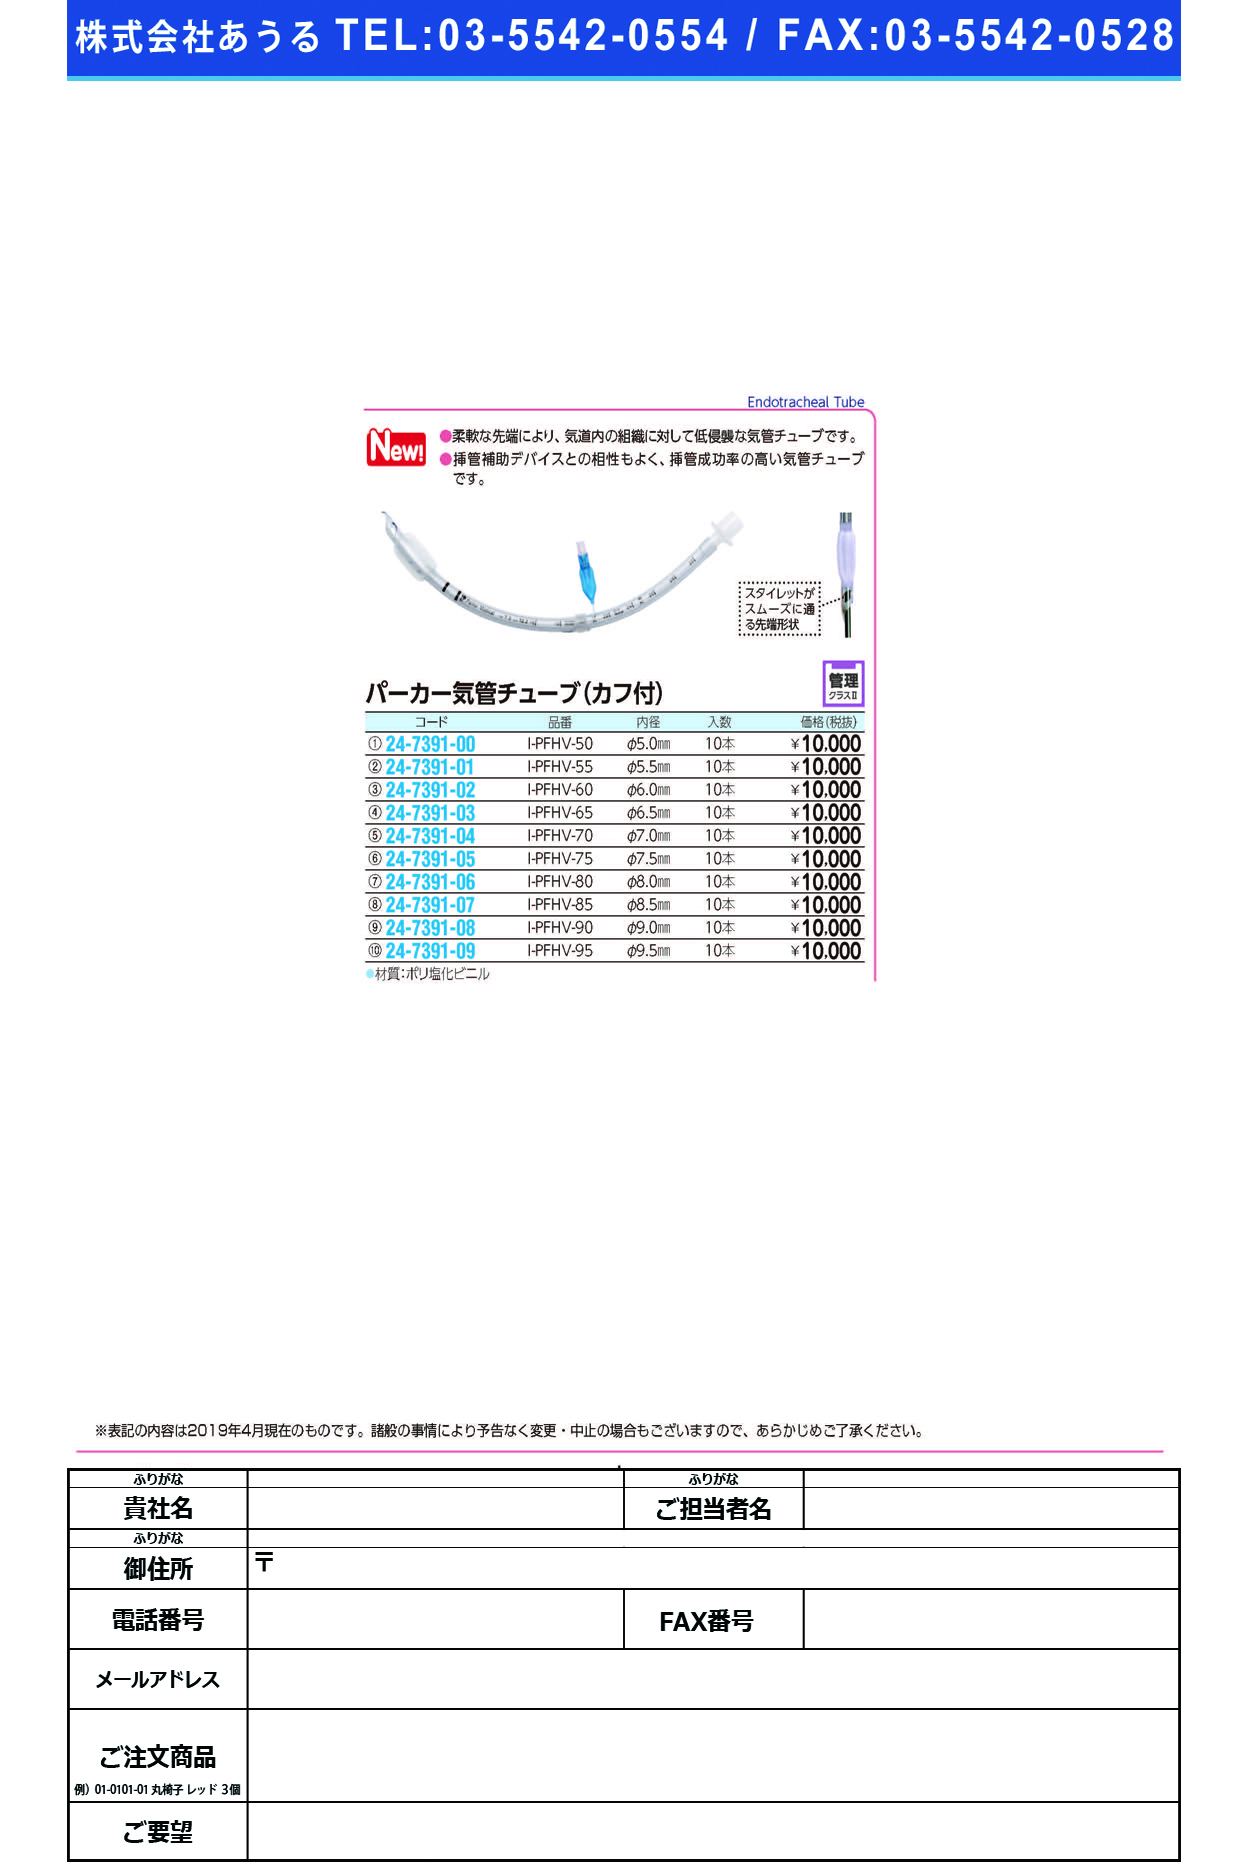 (24-7391-07)パーカー気管チューブI-PFHV-85(8.5MM)10ﾎﾝ ﾊﾟｰｶｰｷｶﾝﾁｭｰﾌﾞ(日本メディカルネクスト)【1箱単位】【2019年カタログ商品】